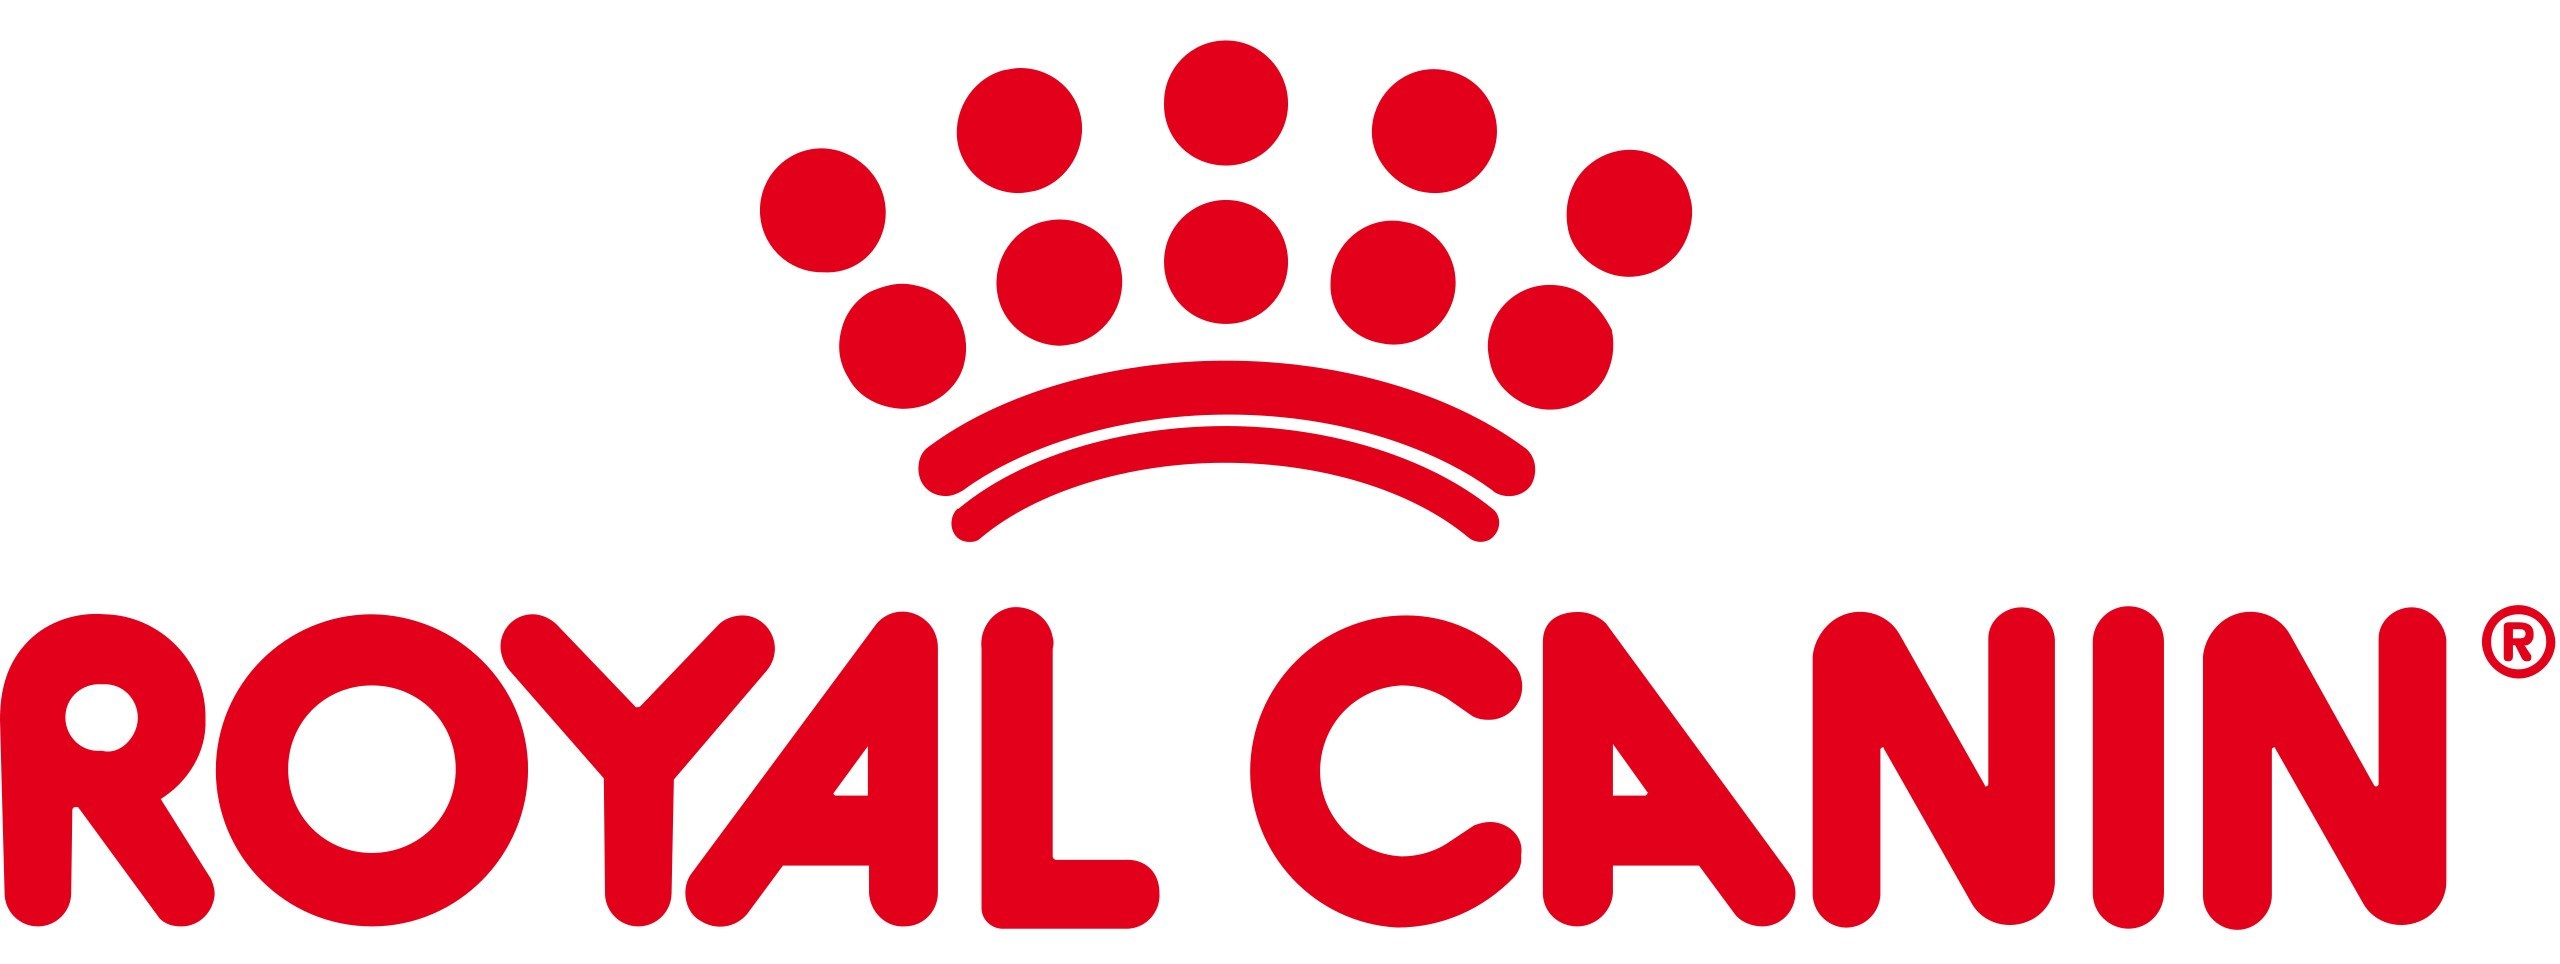 Royal Canin logo (PRNewsfoto/Royal Canin)